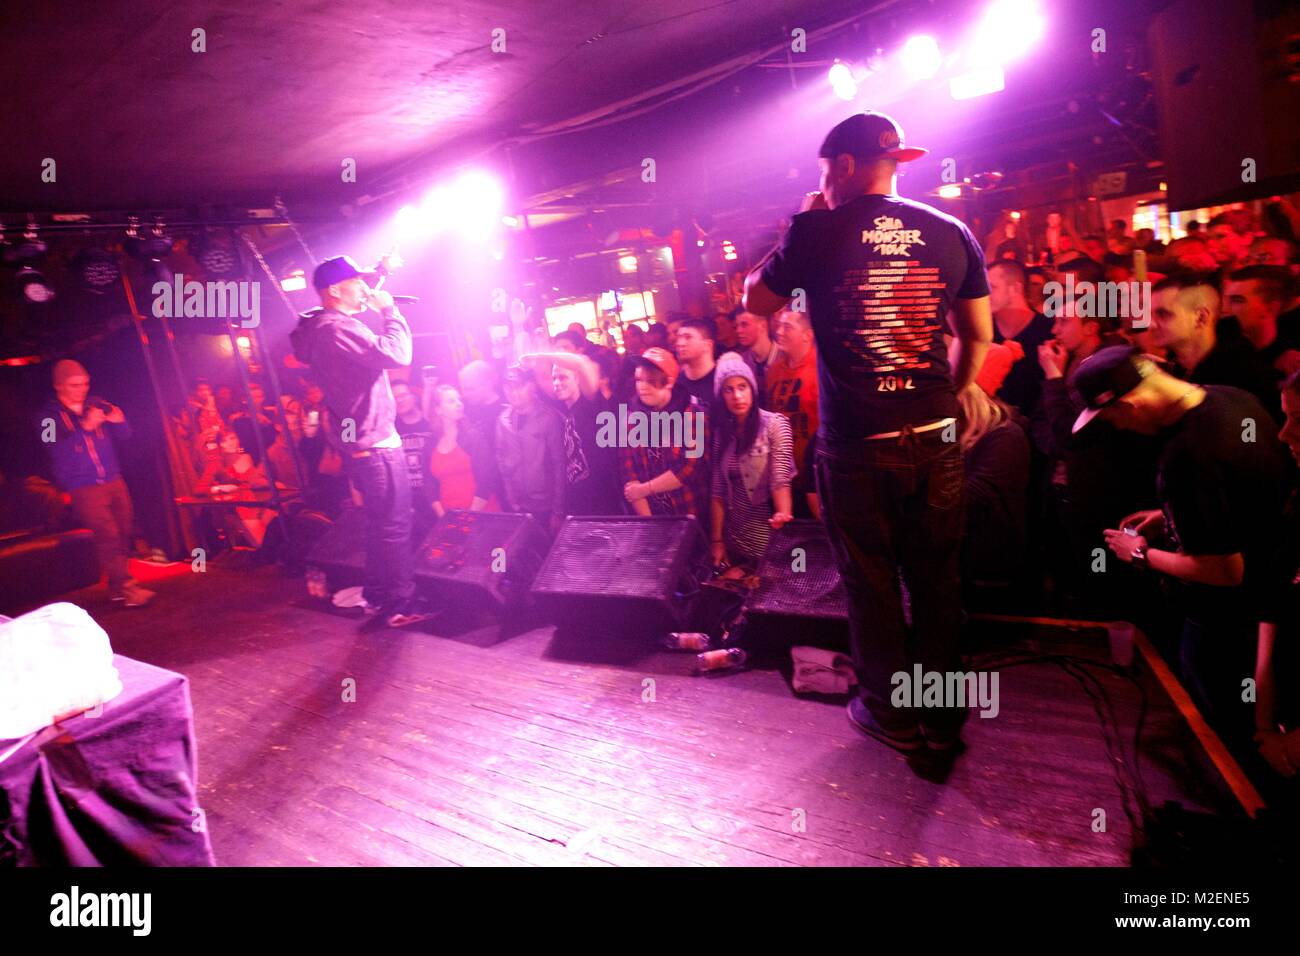 Silla, ehemals Godsilla, (bürgerlich Matthias Schulze), deutscher Rapper aus Berlin, am 08.12.2012 auf circuizione 'Monster Tour' live Kaiserkeller im Foto Stock